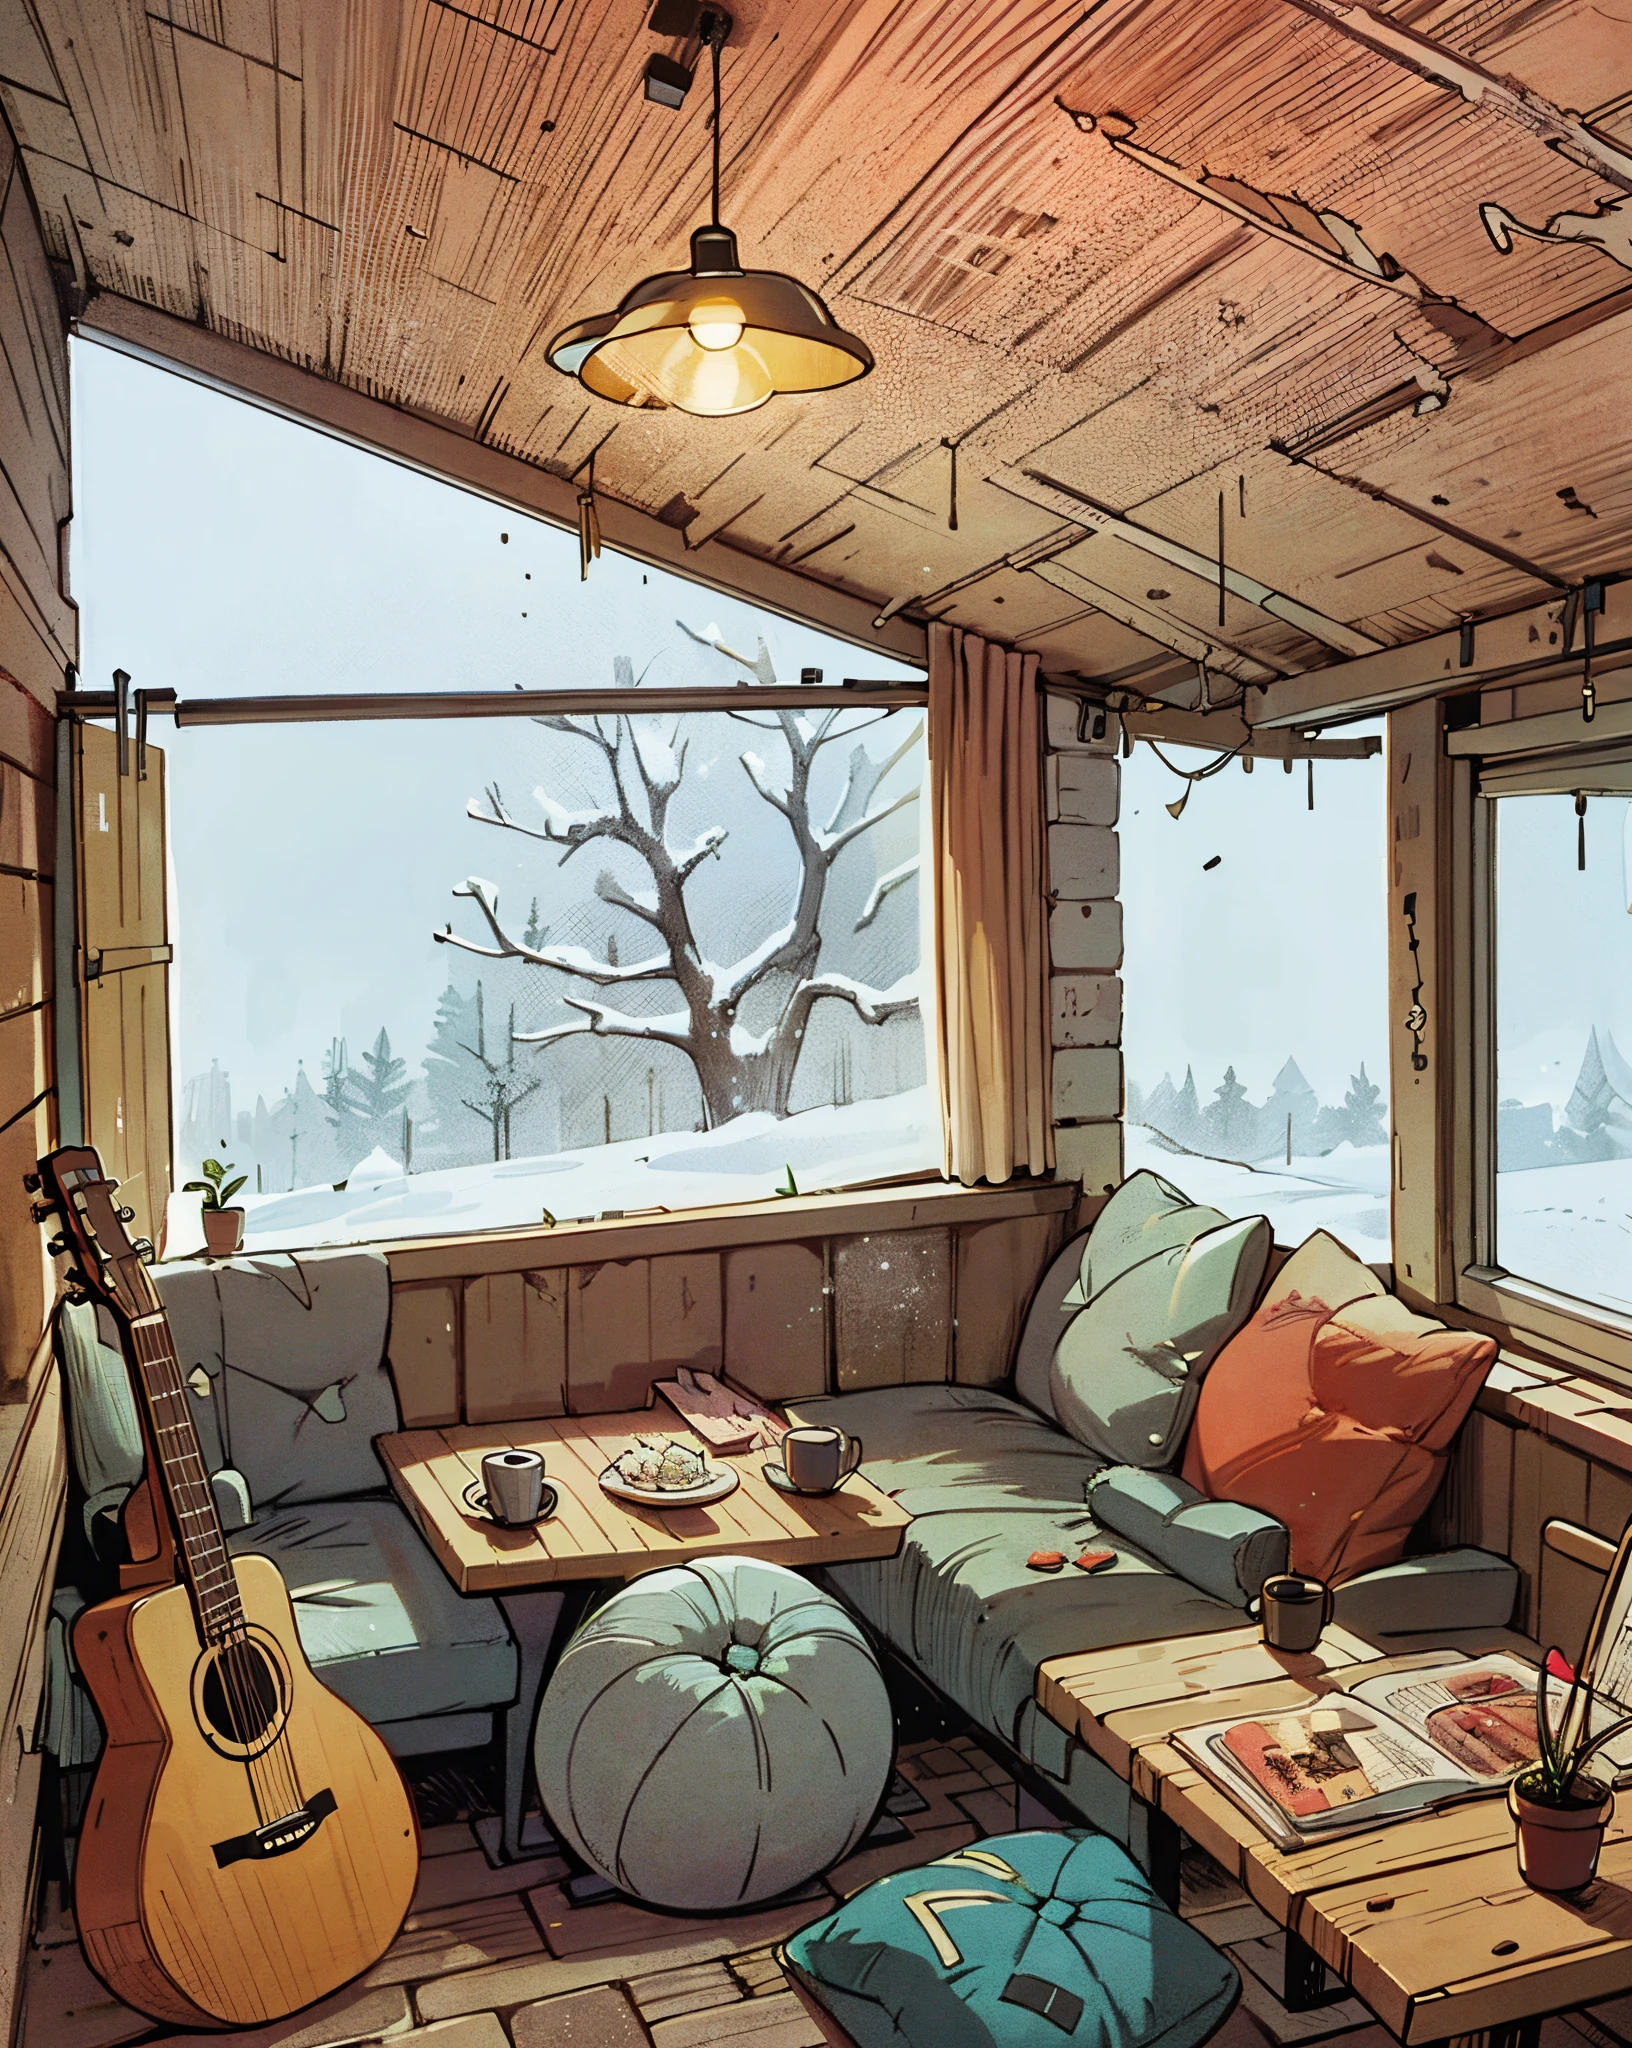 레저 룸. 베개가 많아요 . 테이블 위에 기타와 커피. 밖에 눈이 내리는 큰 창문. 애니메이션 배경. 만화 페이지